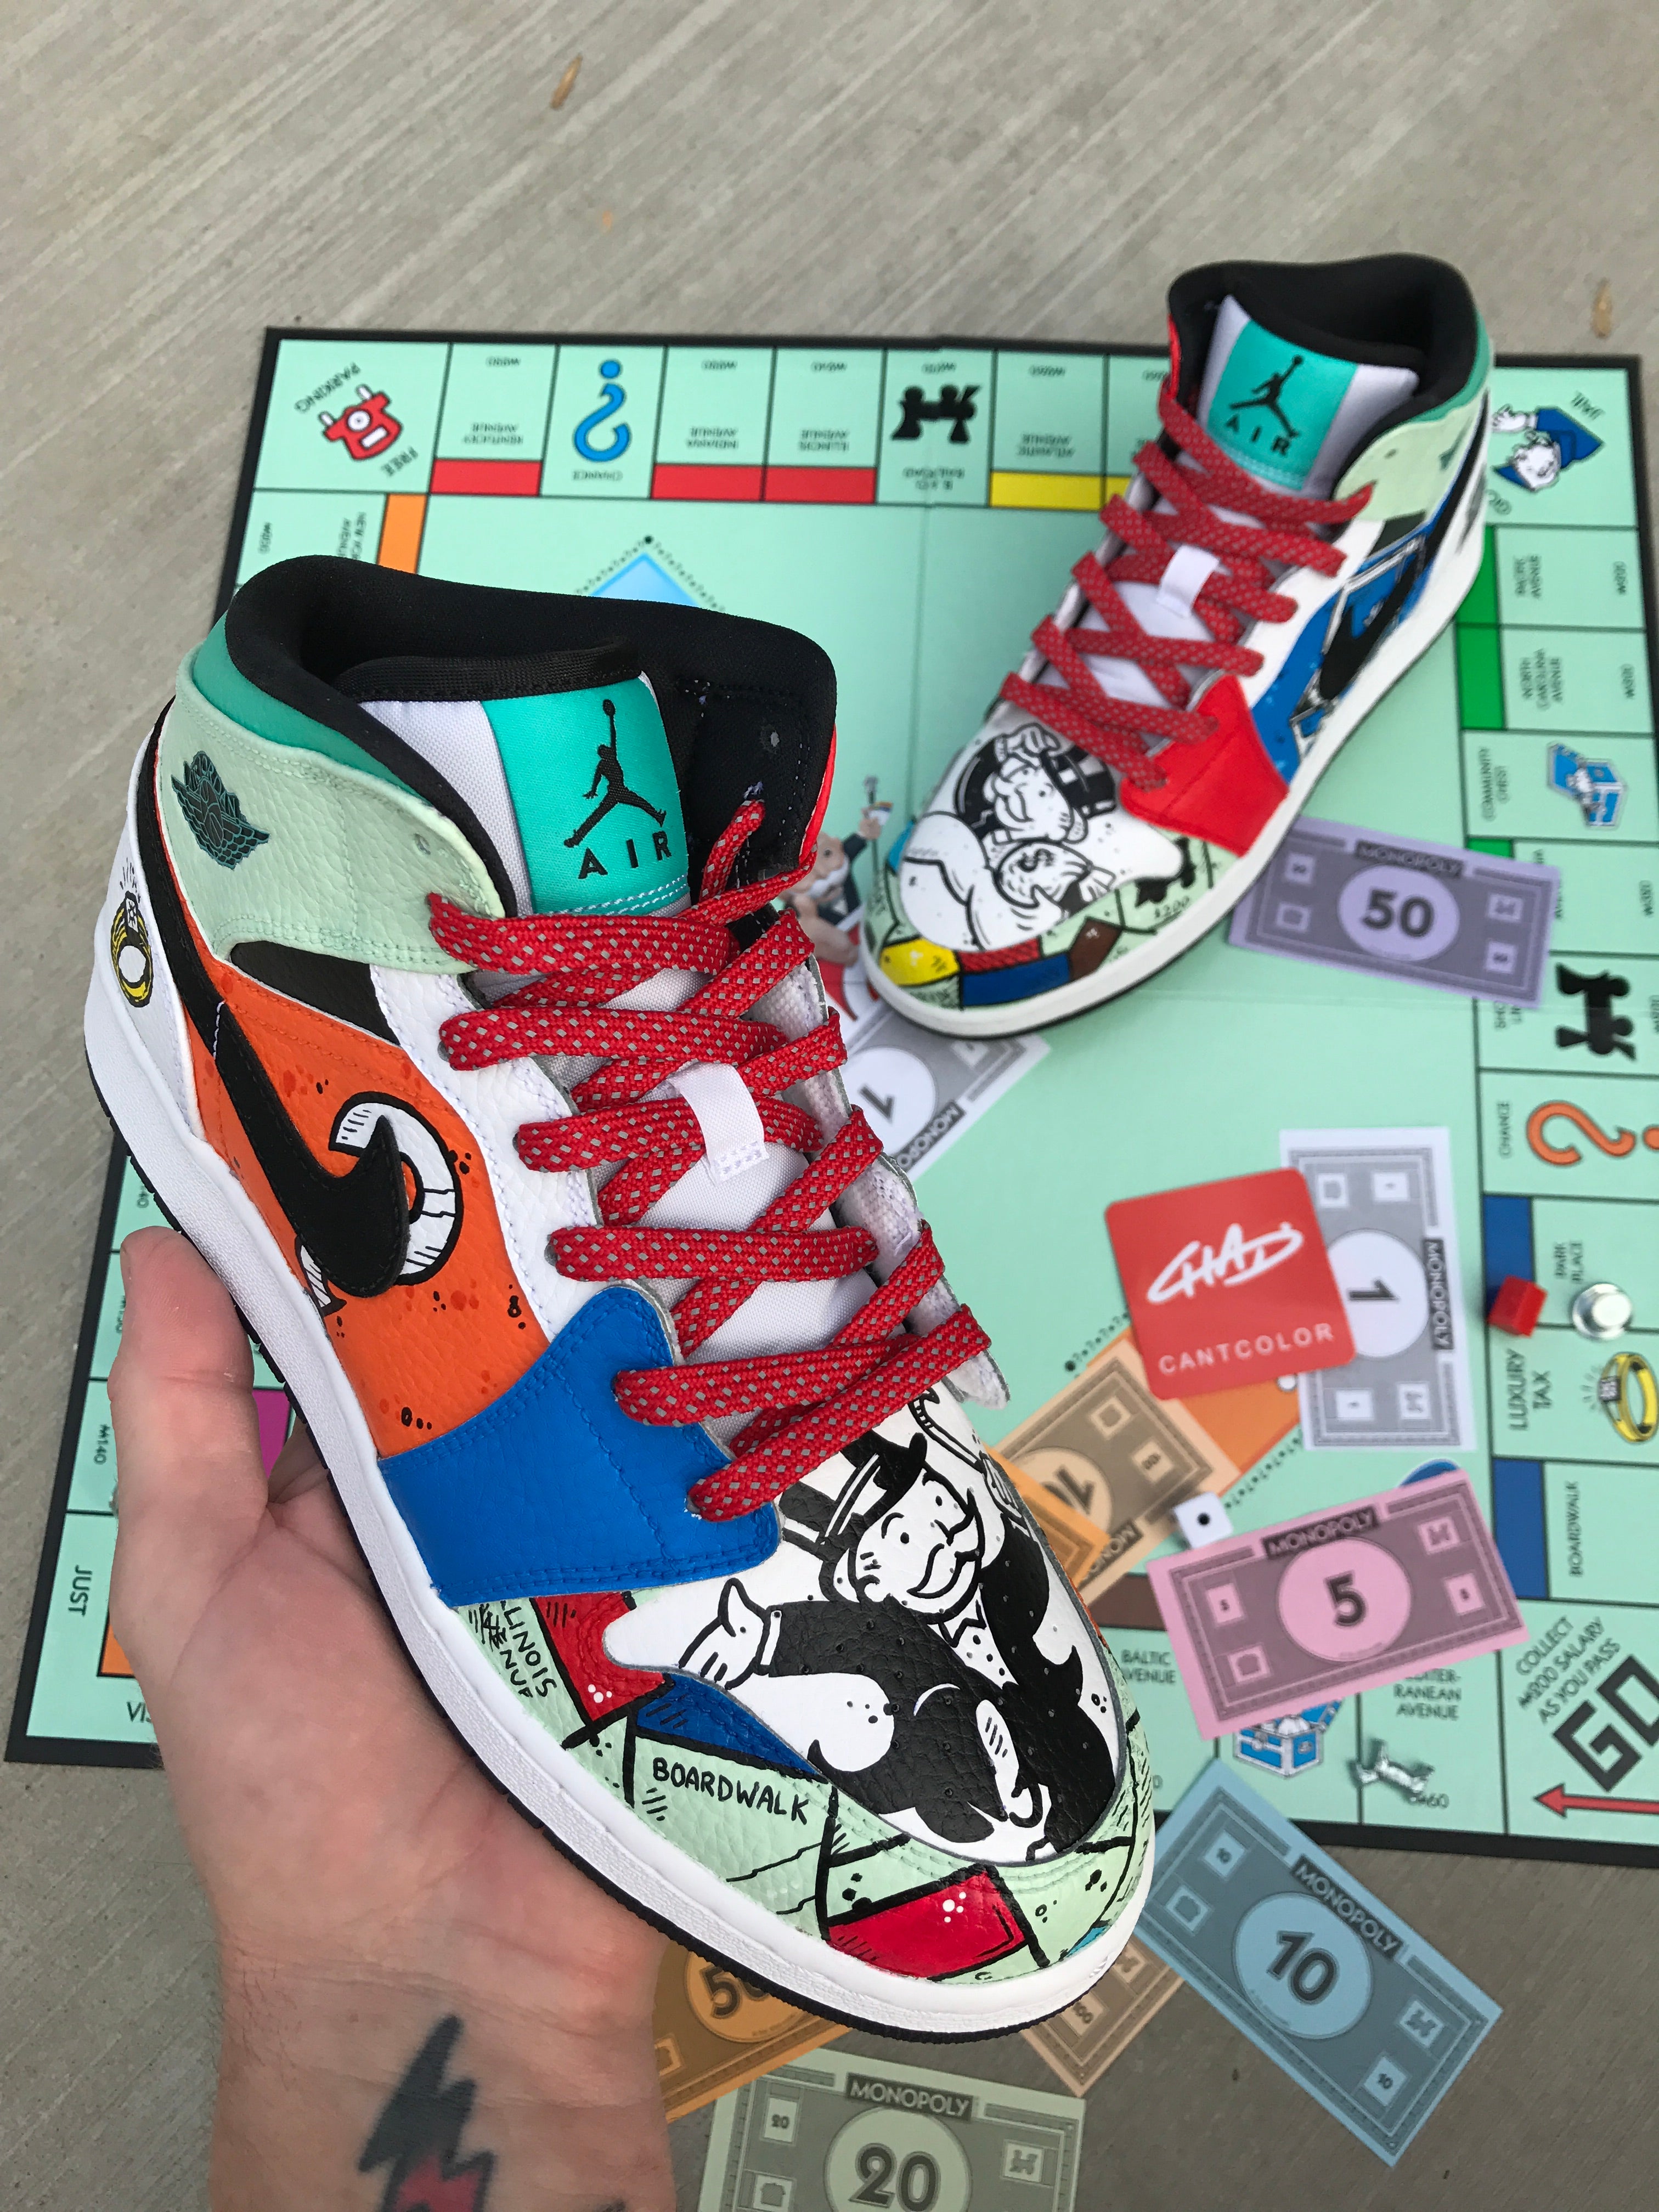 Monopoly Nike Jordan retro shoes